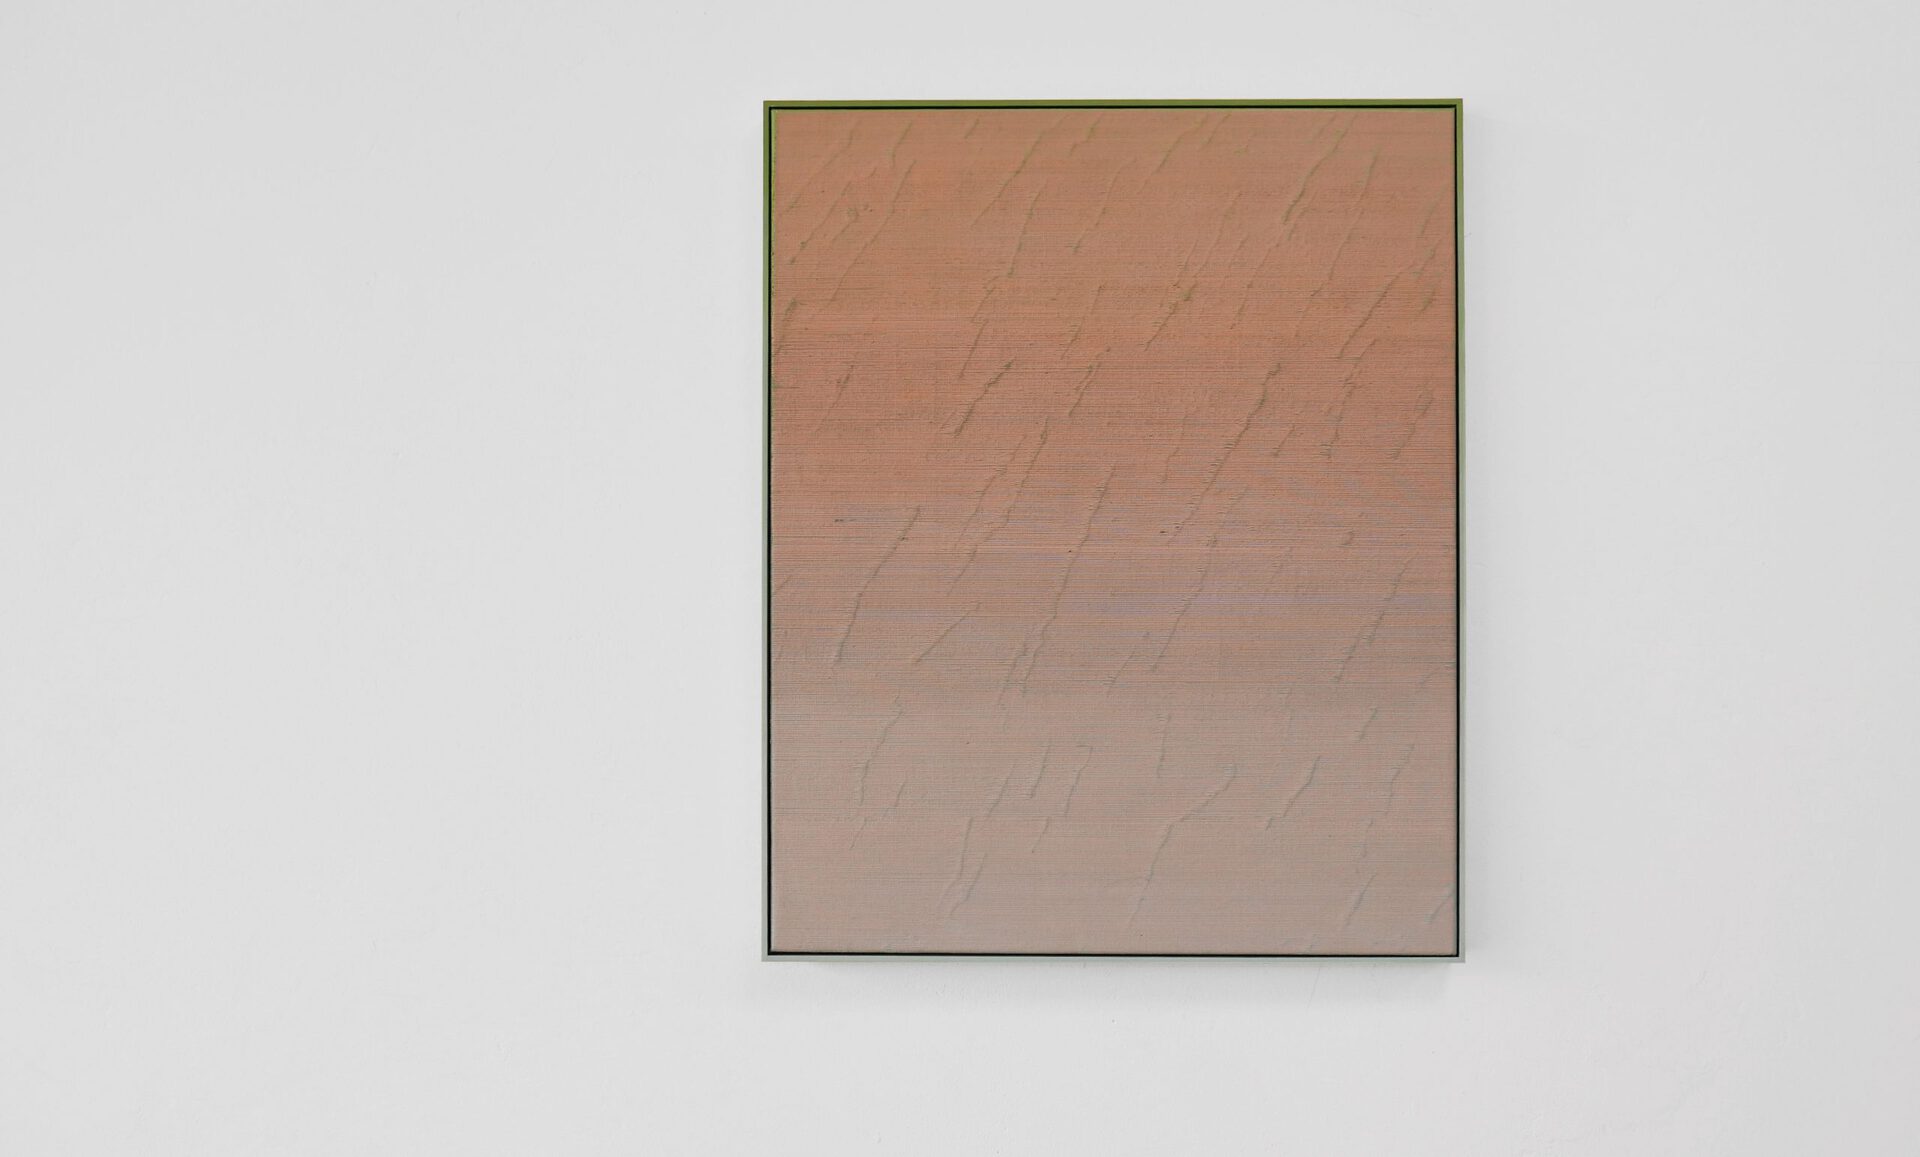 Claudia Kleiner, webung 21.02, 2020, oil on canvas, 64 x 52 cm